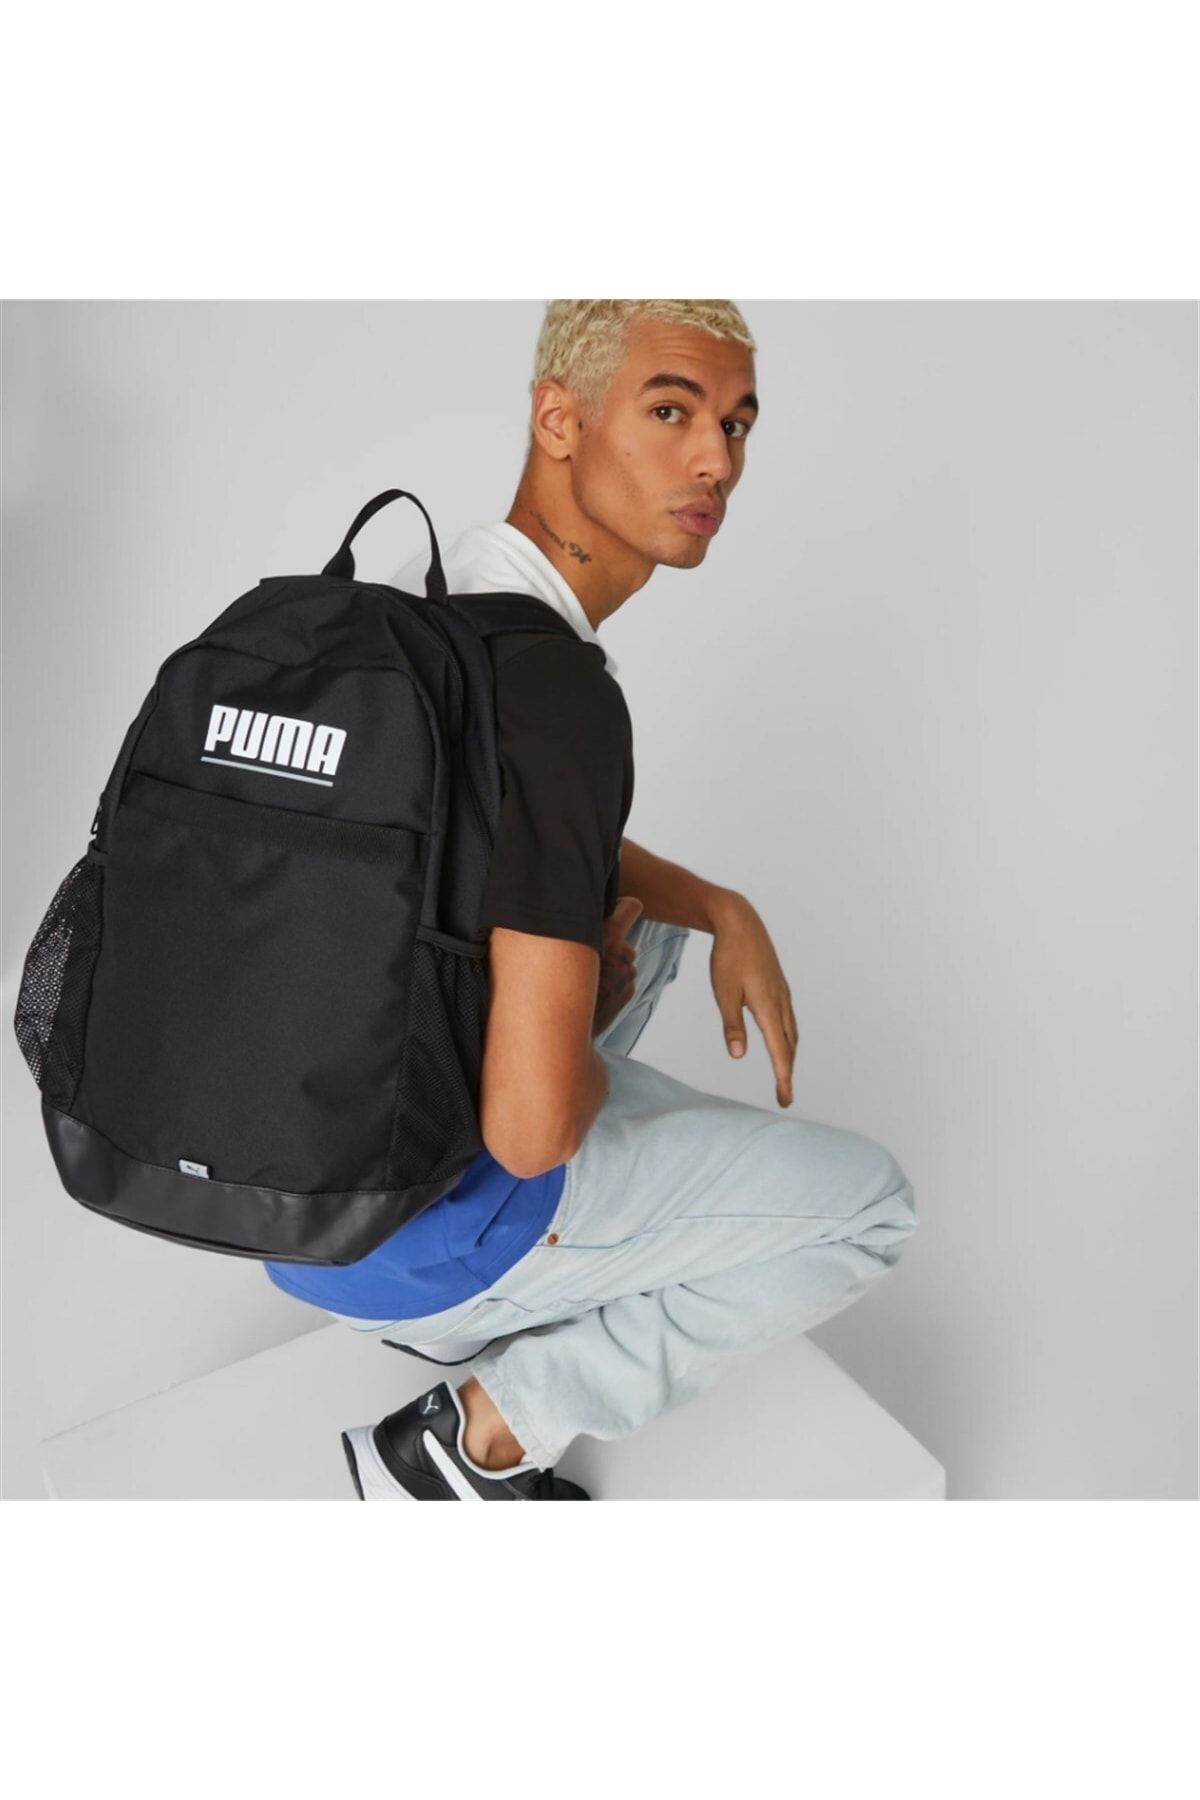 079615-01 Backpack - Puma Plus Backpack Trendyol Black